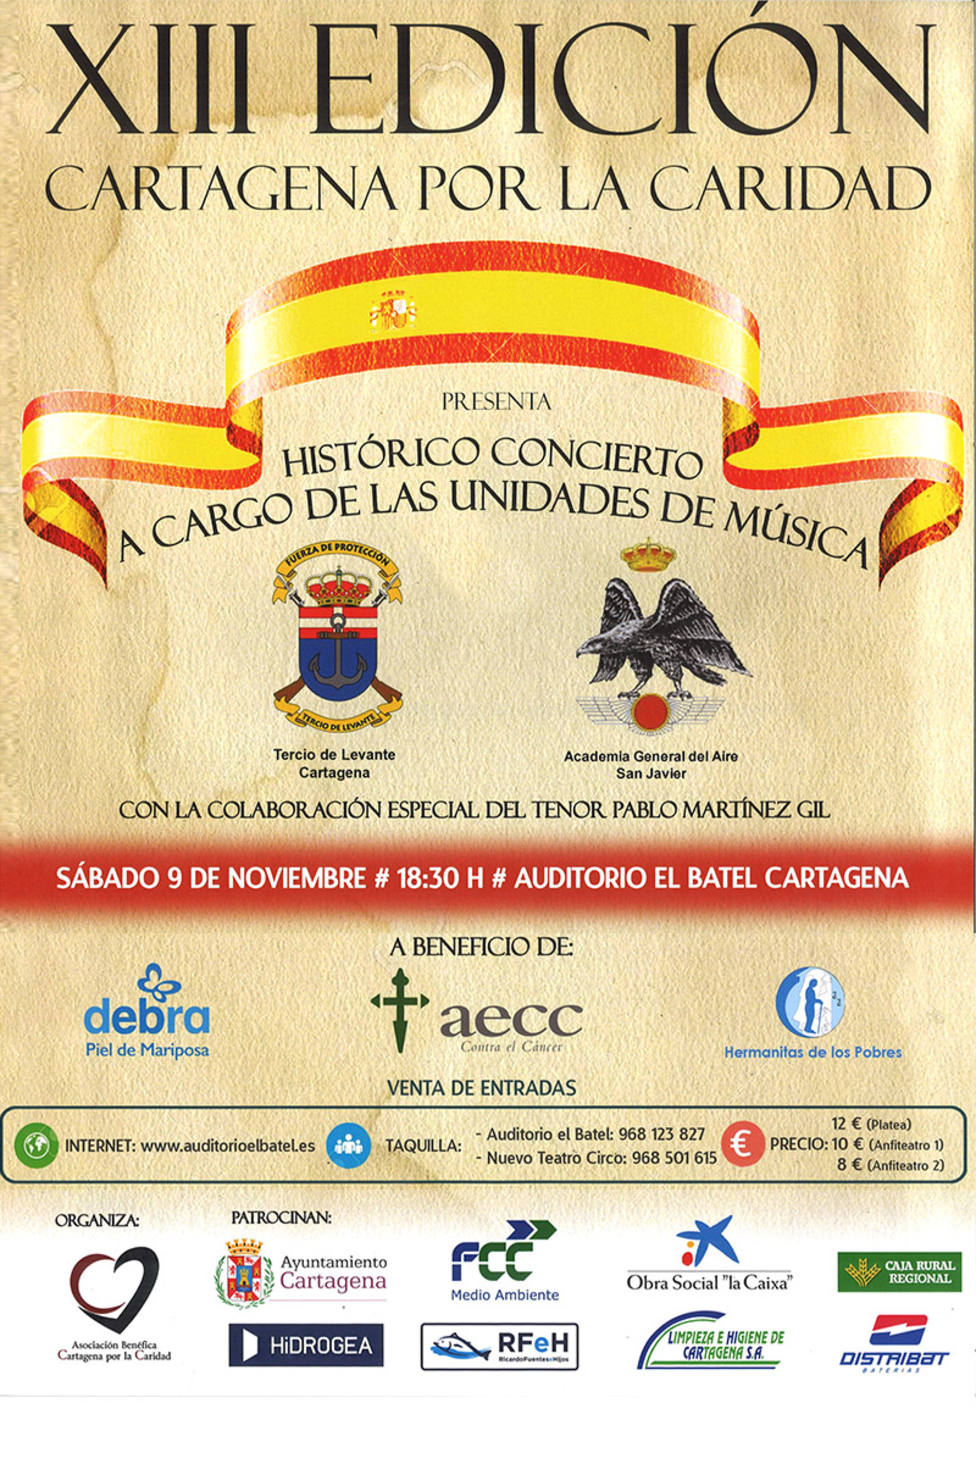 Cartagena presenta una agenda cargada de actividades